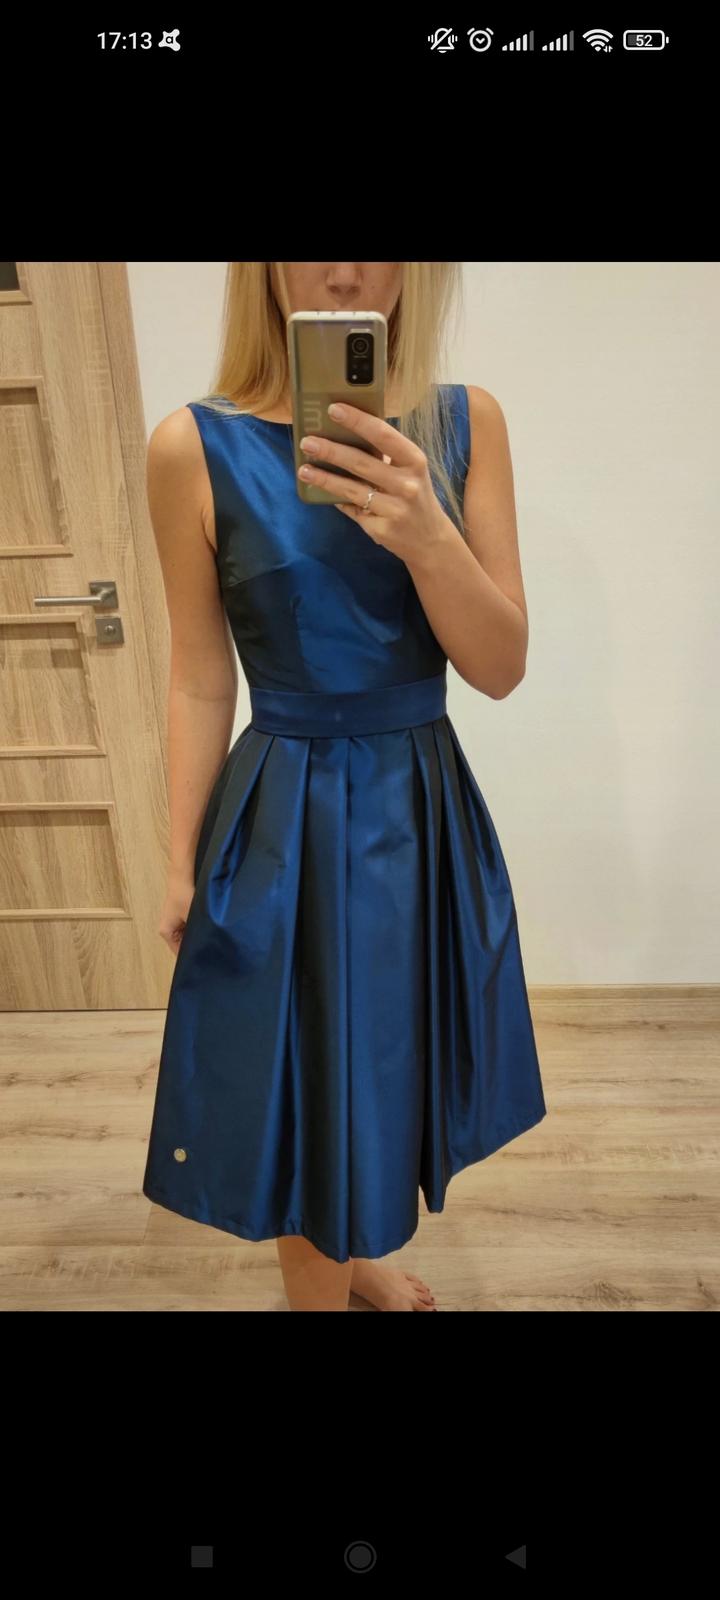 modré společenské šaty - Obrázek č. 1